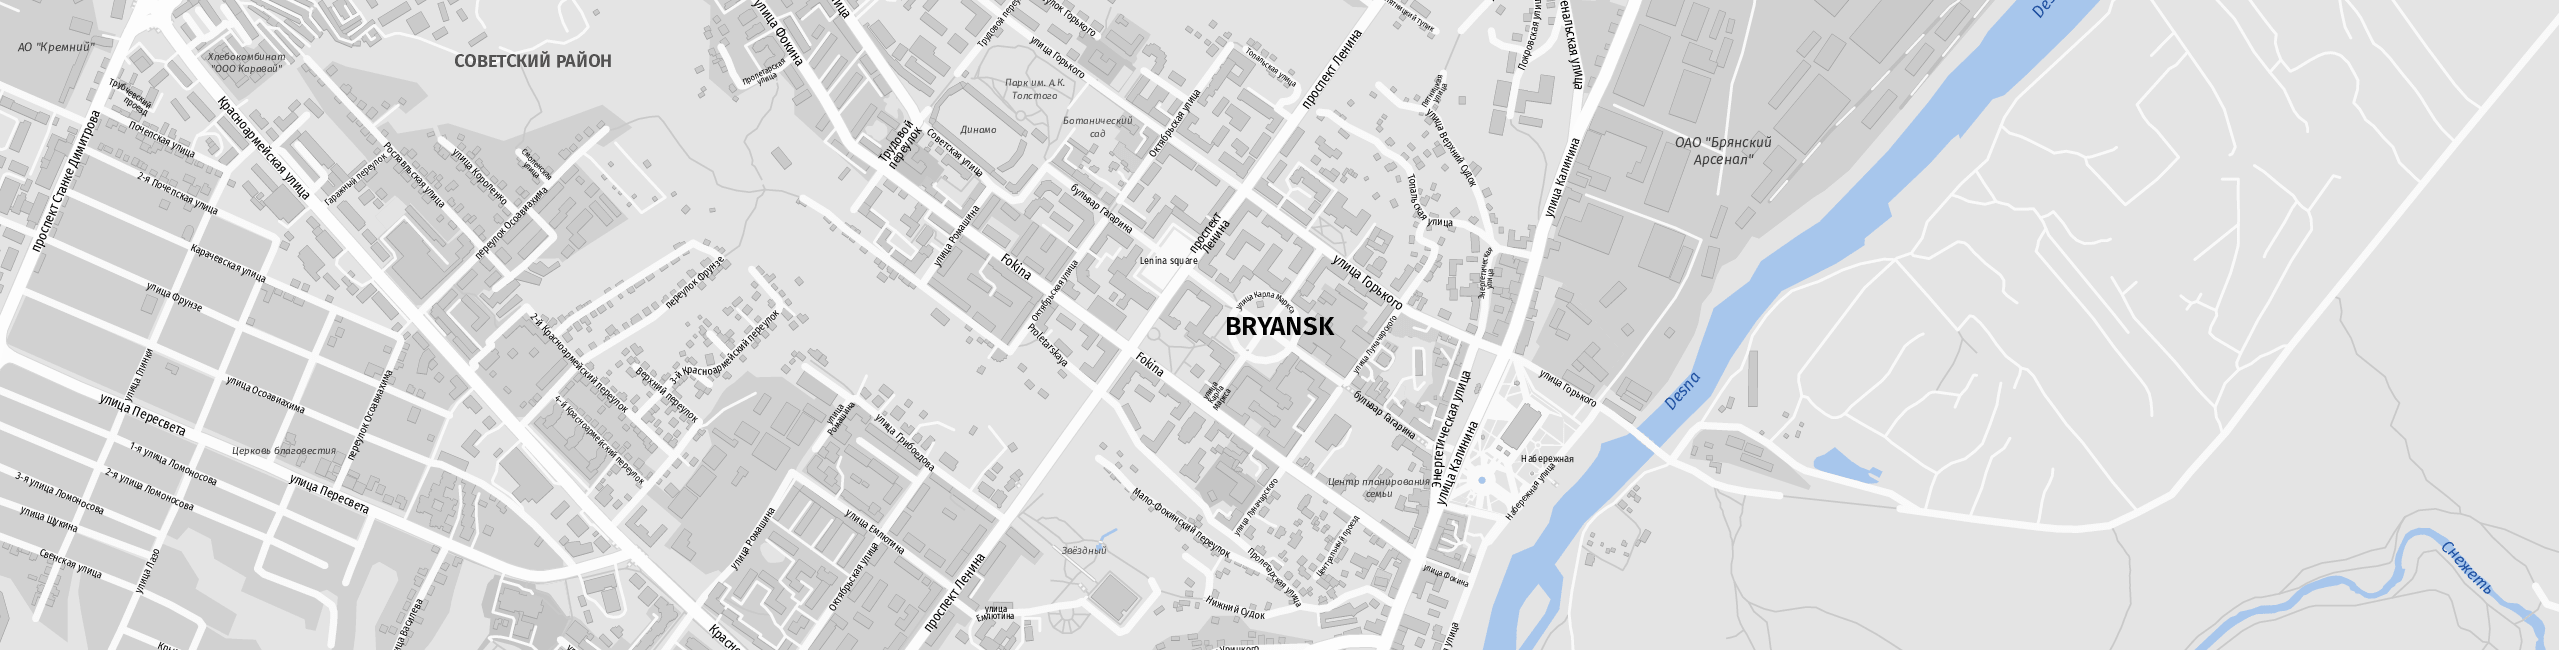 Stadtplan Brjansk zum Downloaden.